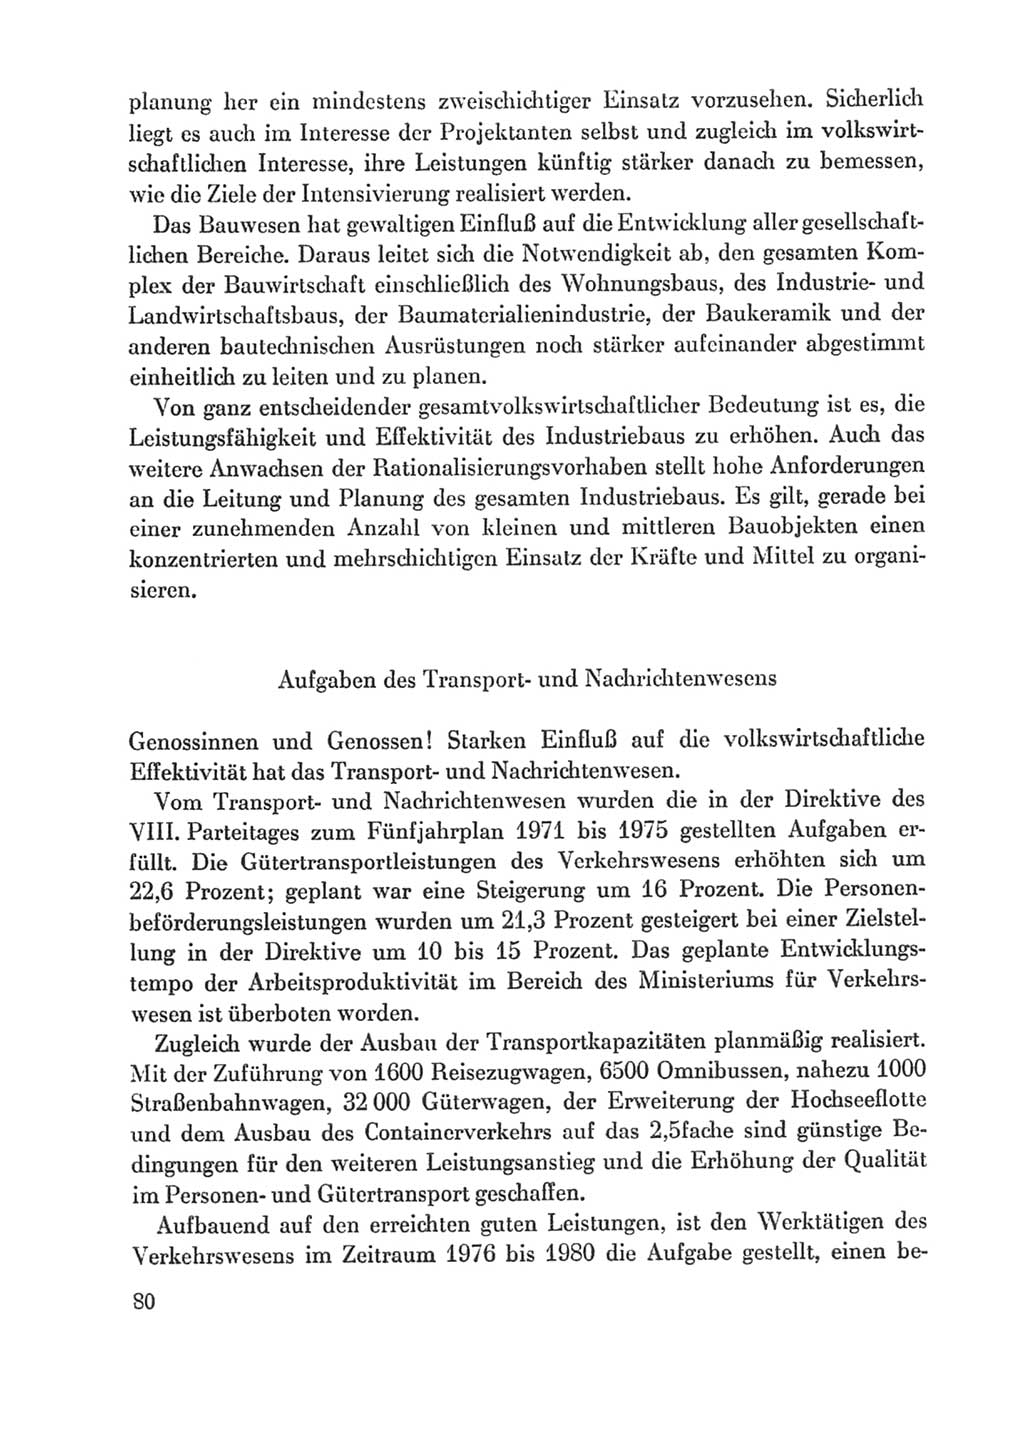 Protokoll der Verhandlungen des Ⅸ. Parteitages der Sozialistischen Einheitspartei Deutschlands (SED) [Deutsche Demokratische Republik (DDR)] 1976, Band 1, Seite 80 (Prot. Verh. Ⅸ. PT SED DDR 1976, Bd. 1, S. 80)